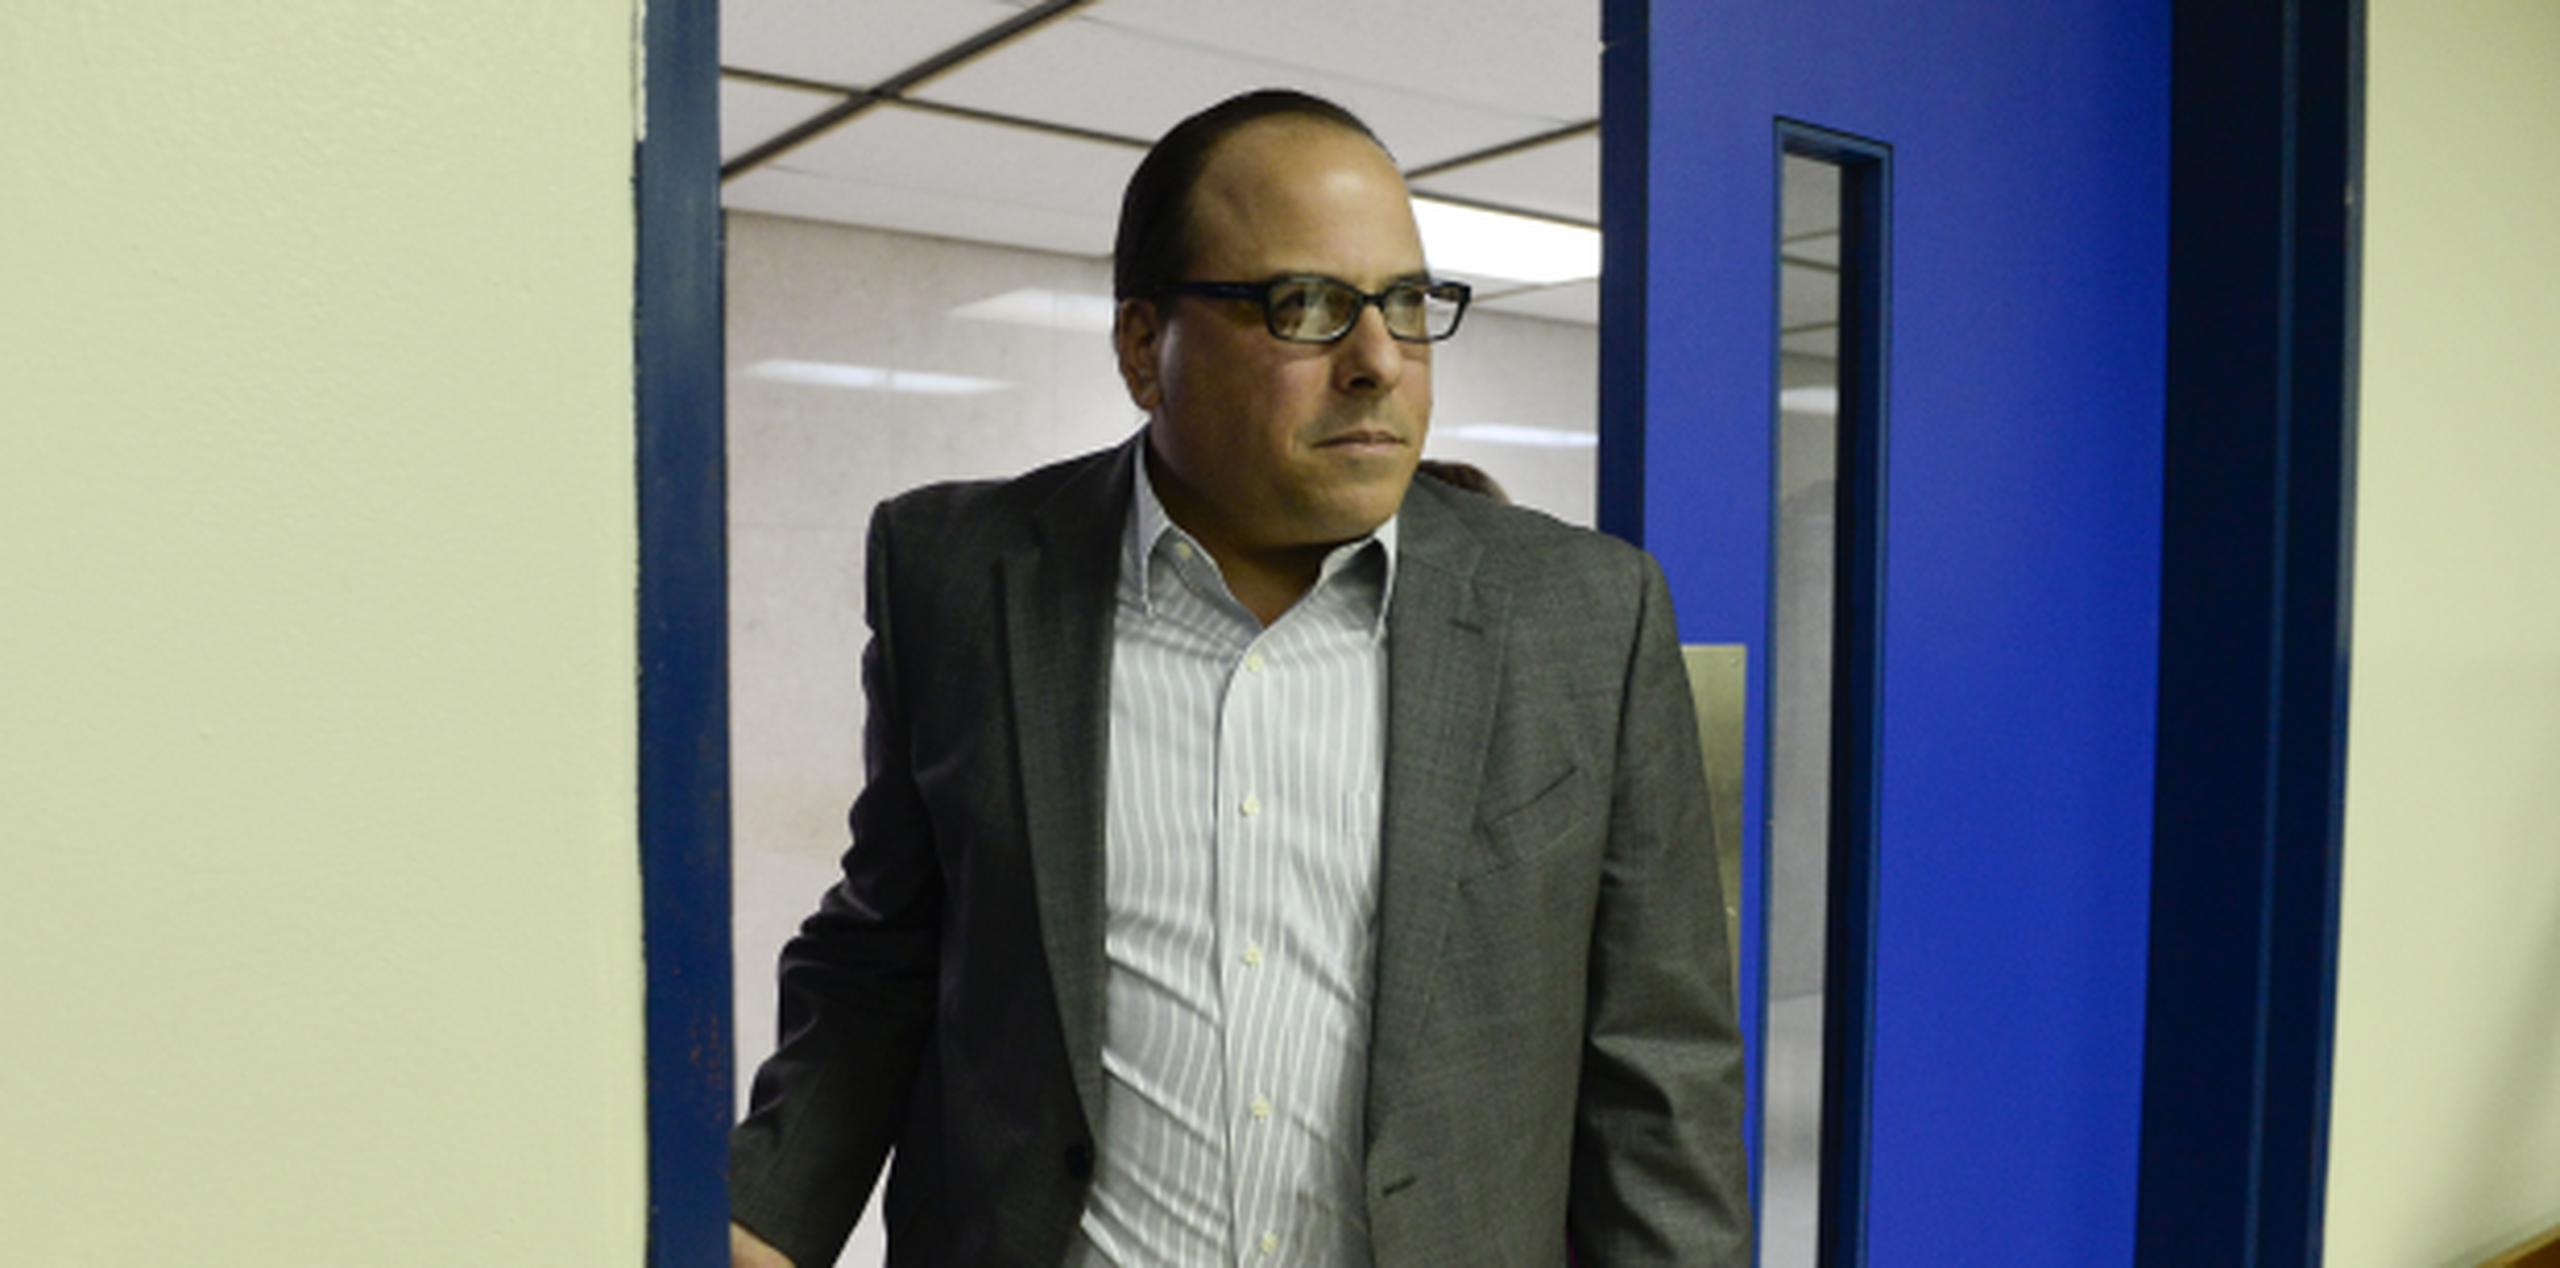 Jaime Perelló entrando a la sala 907 del Centro Judicial de San Juan para su vista preliminar en el caso por corrupción. (GERALD.LOPEZ@GFRMEDIA.COM)